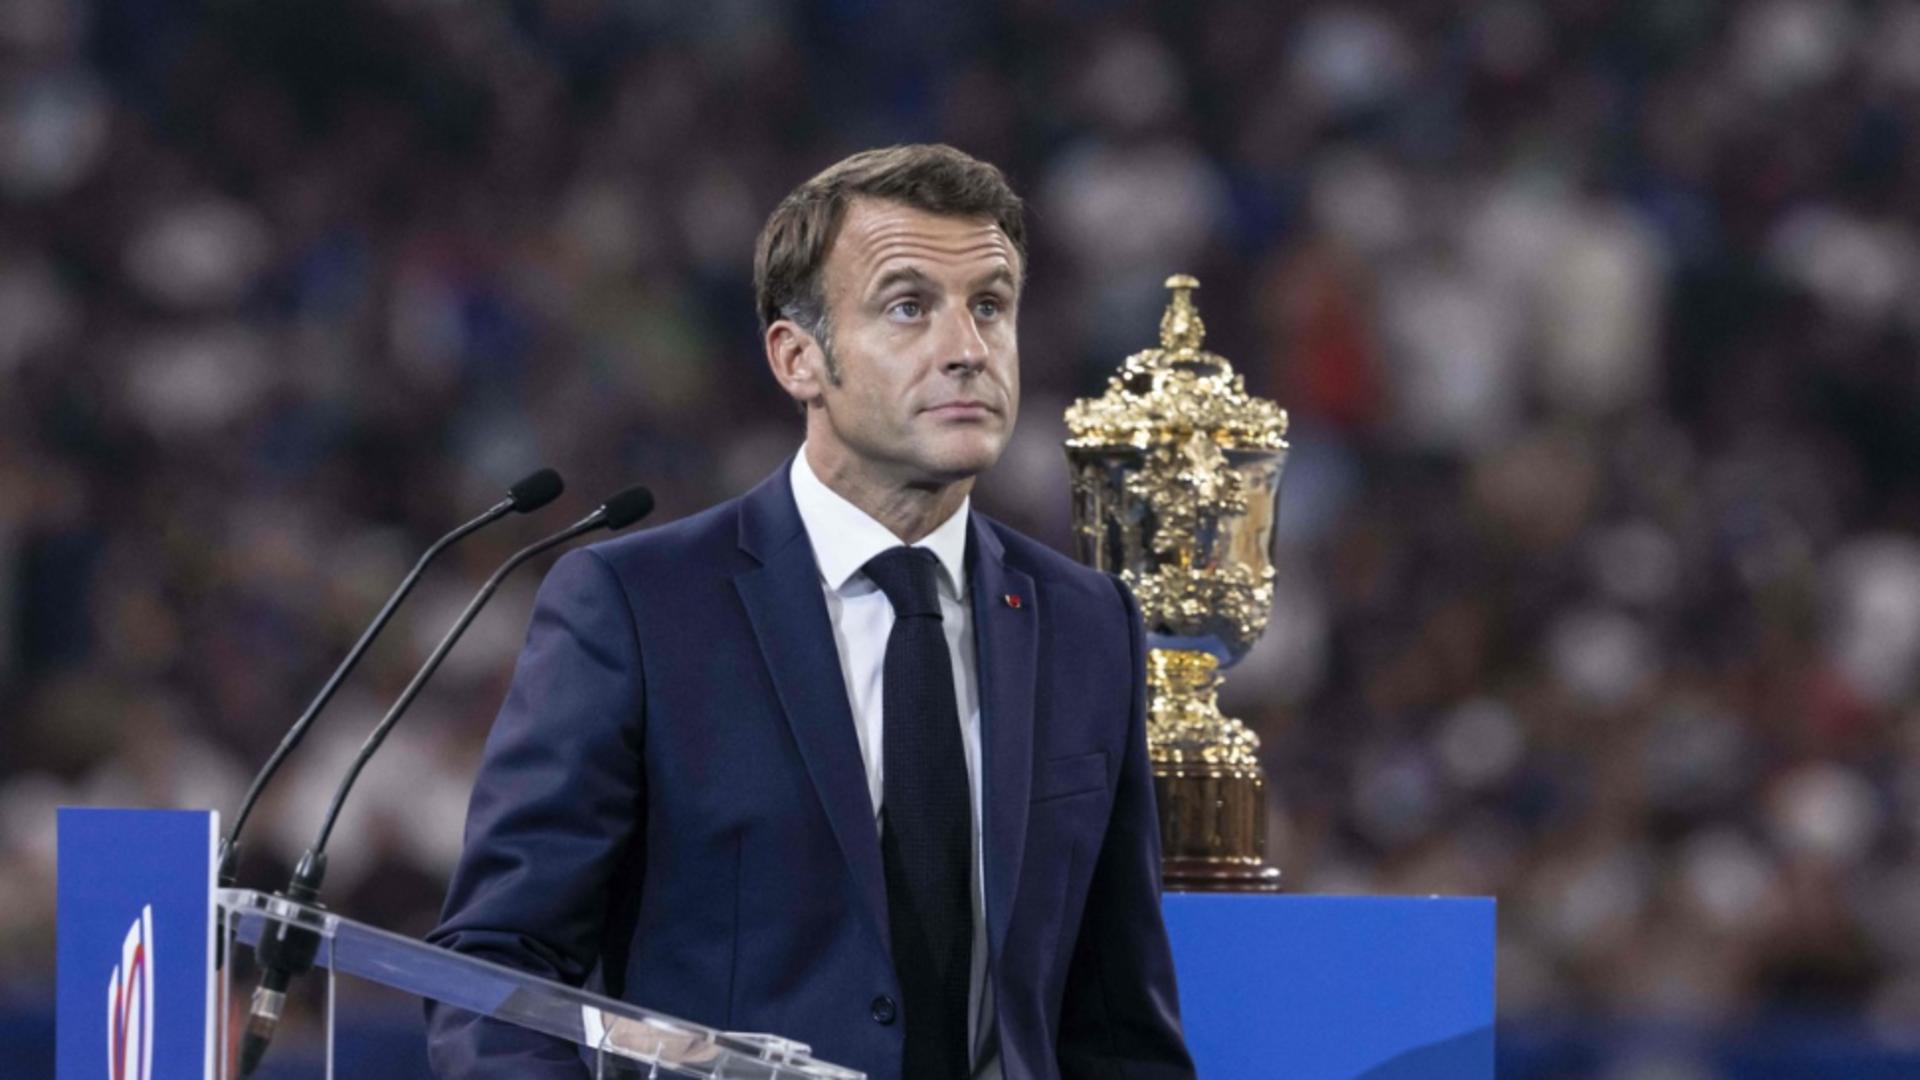 Președintele Macron, fluierat și huiduit masiv de francezi la deschiderea Campionatului mondial de rugby – Imagini virale 